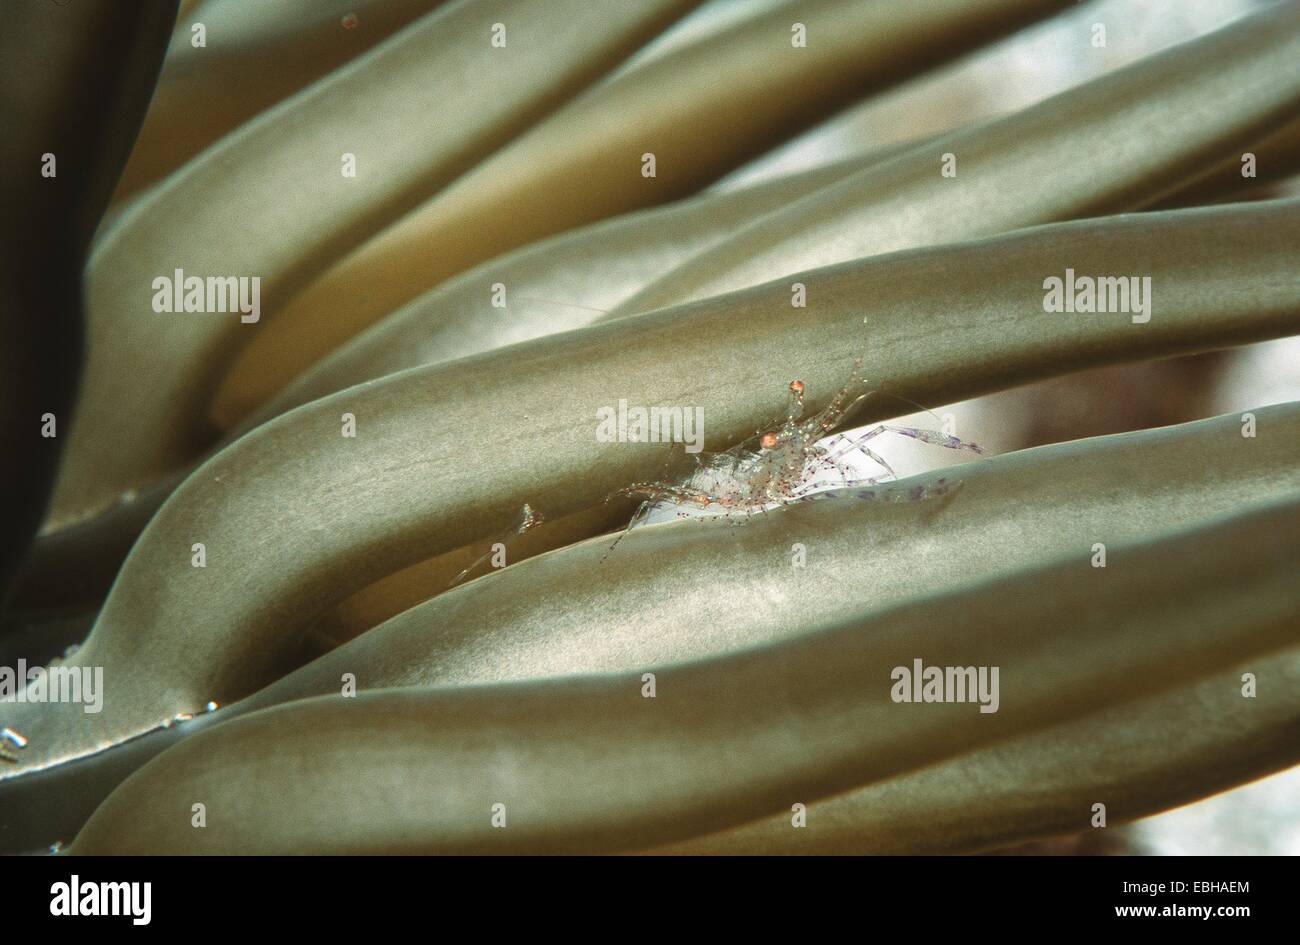 Chiazzato di cernia, camuffamento di cernia con anemone dorato, sabbia dorata (anemone Periclimenes scriptus, Condylactis aurantiaca). Foto Stock